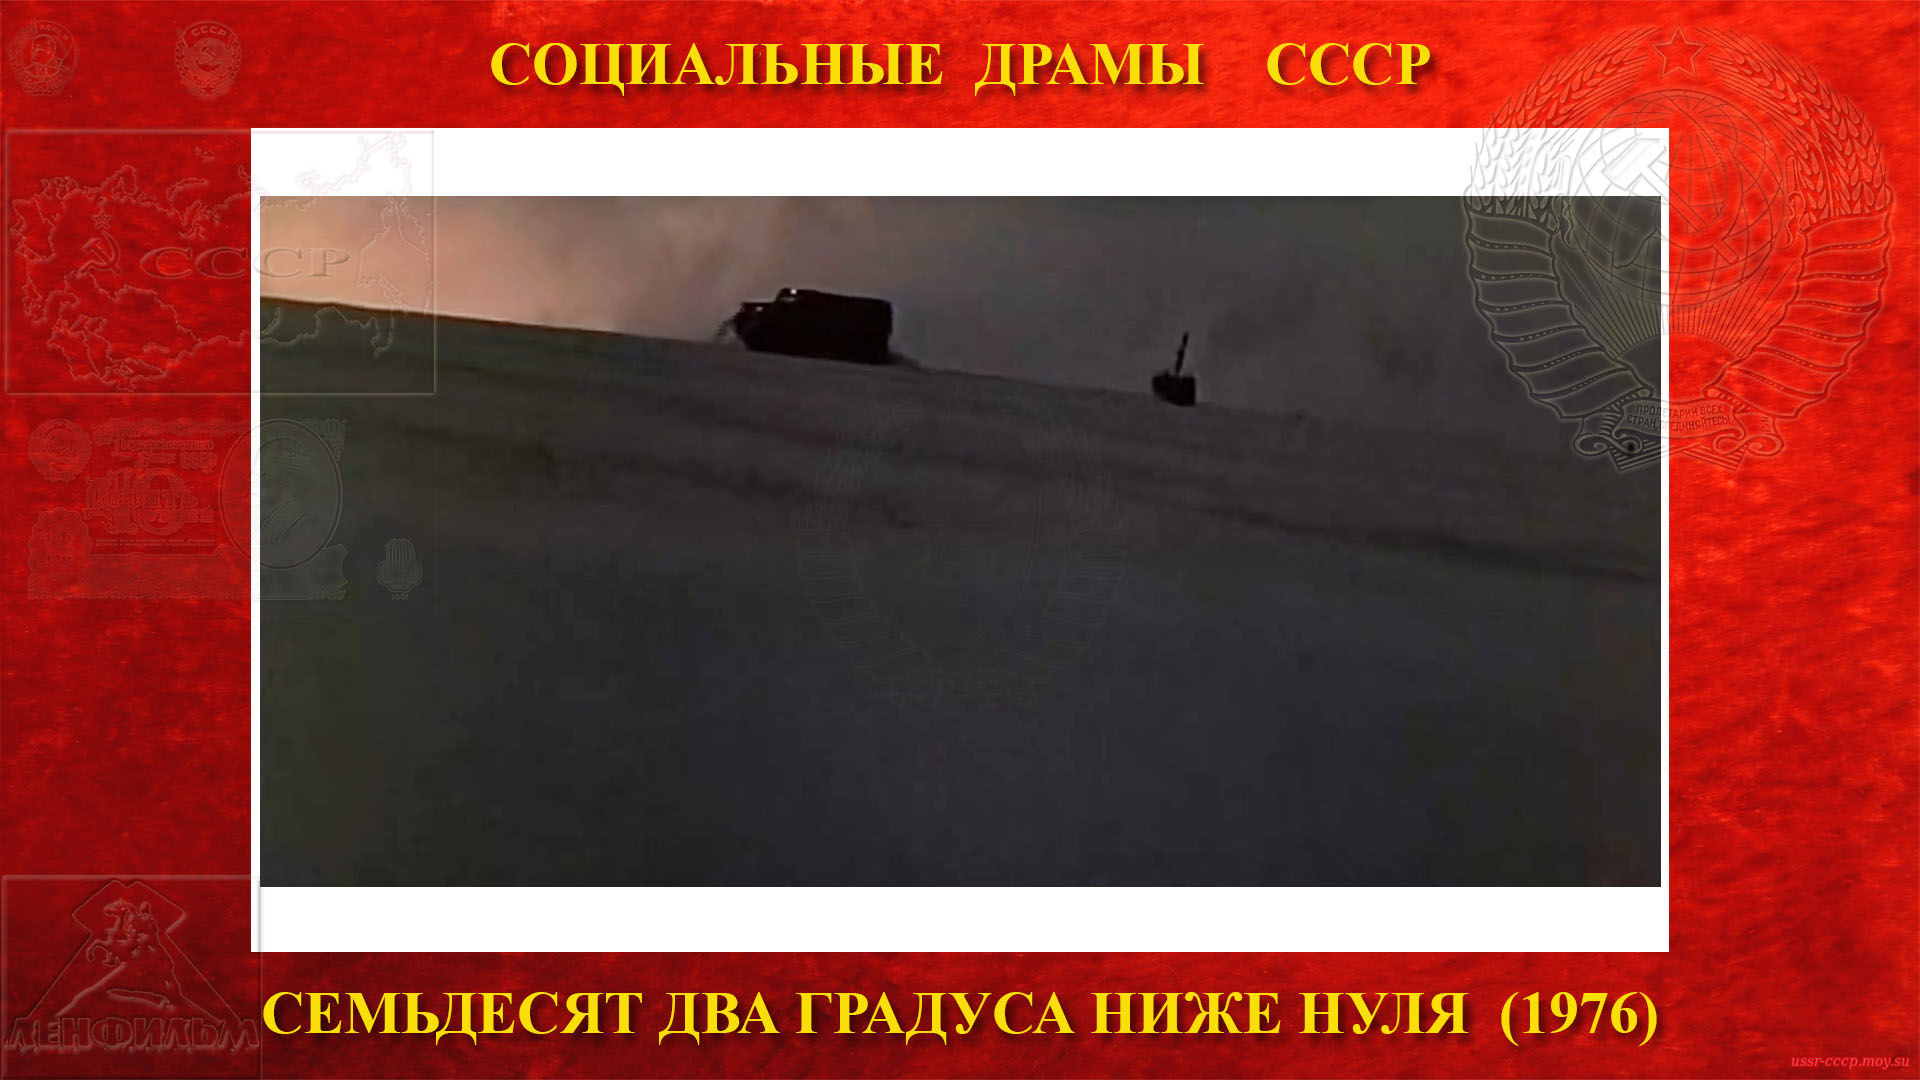 Семьдесят два градуса ниже нуля — Штурман Сергей Попов узнав, что отряд не может найти ворота самовольно отправляется на вездеходе к отряду Гаврилова и попытаться найти поезд. 